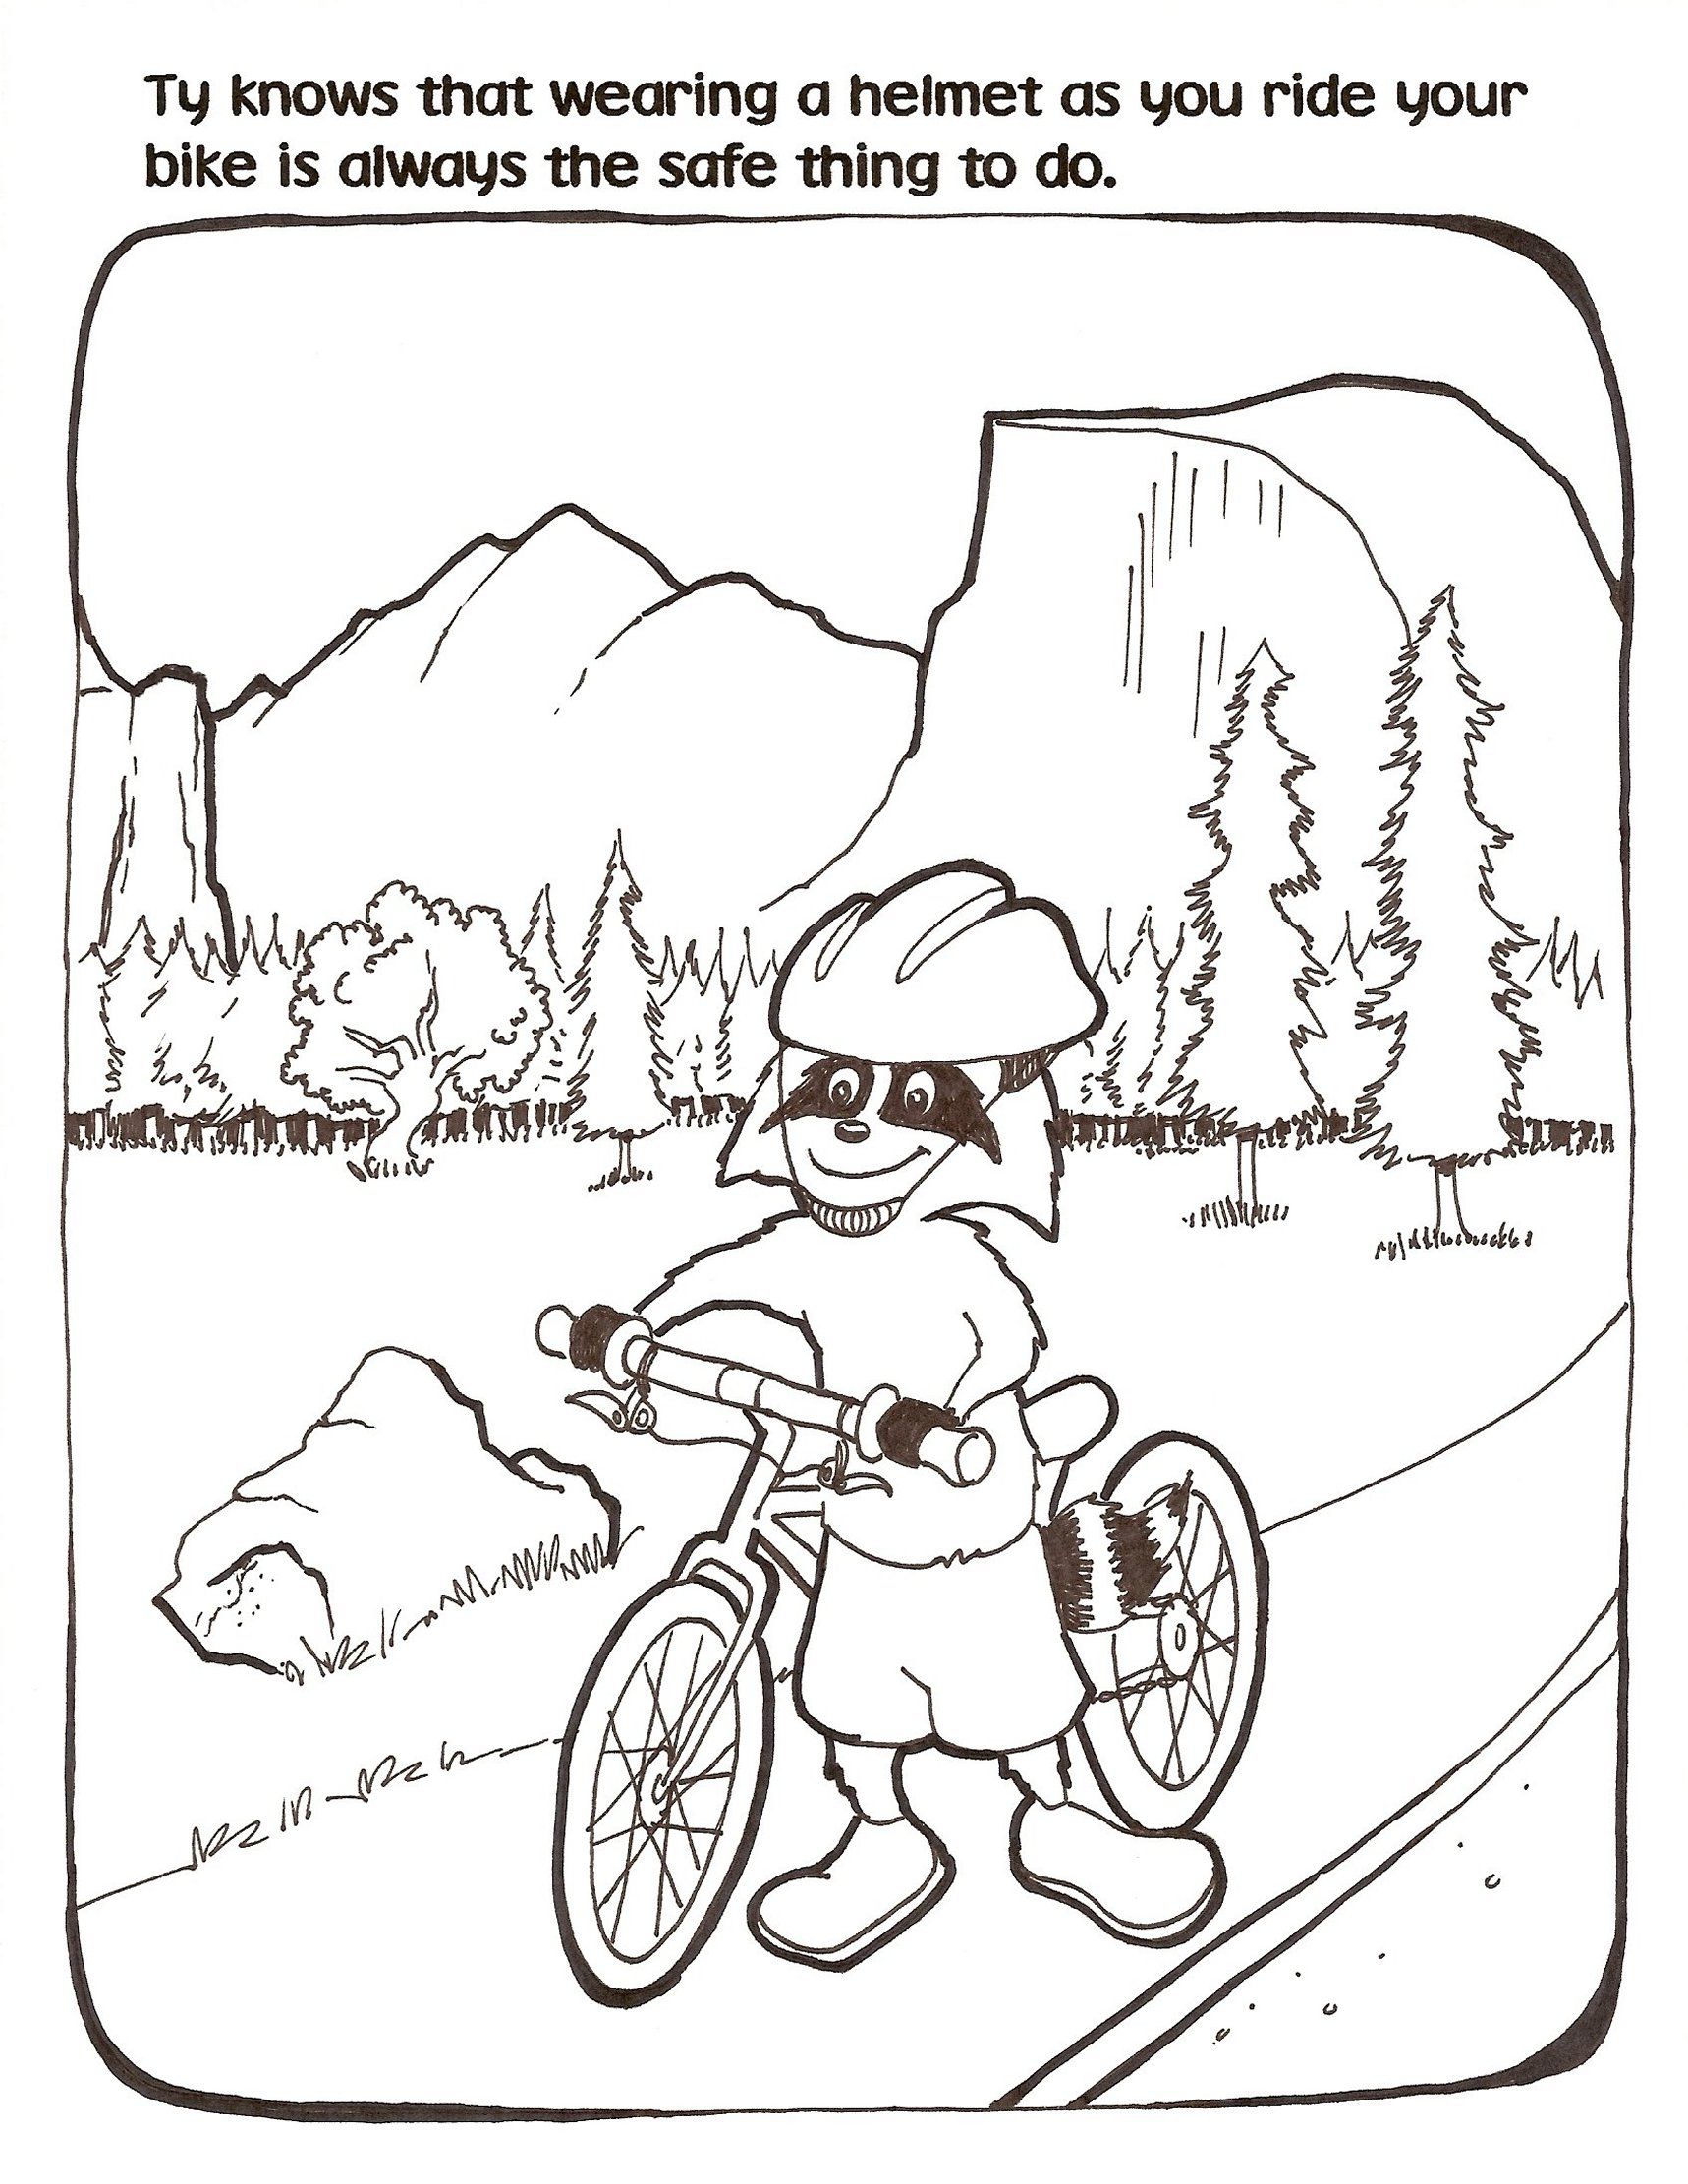 Bike ride safety | Little TyCooney